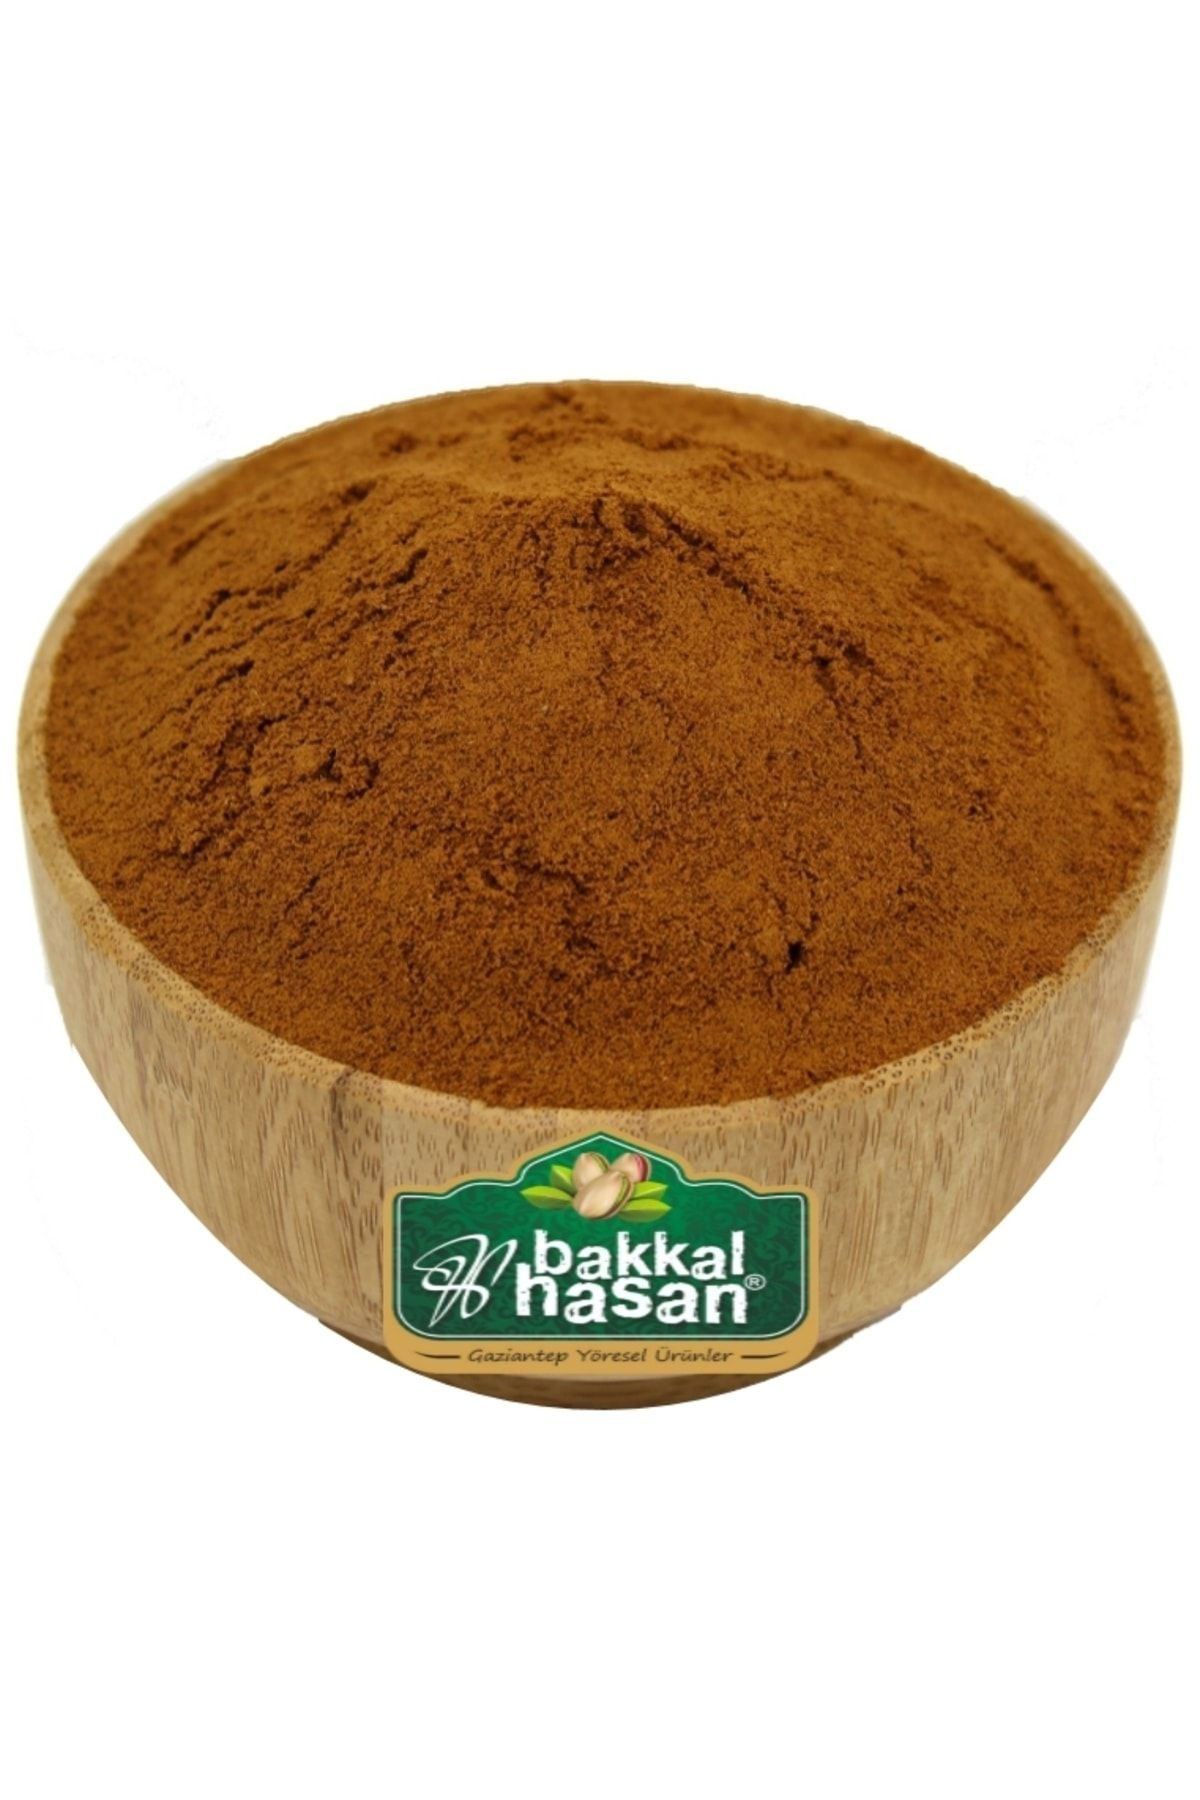 bakkal hasan Damla Sakızlı Toz Kahve 500 gr - Bakkal Hasan